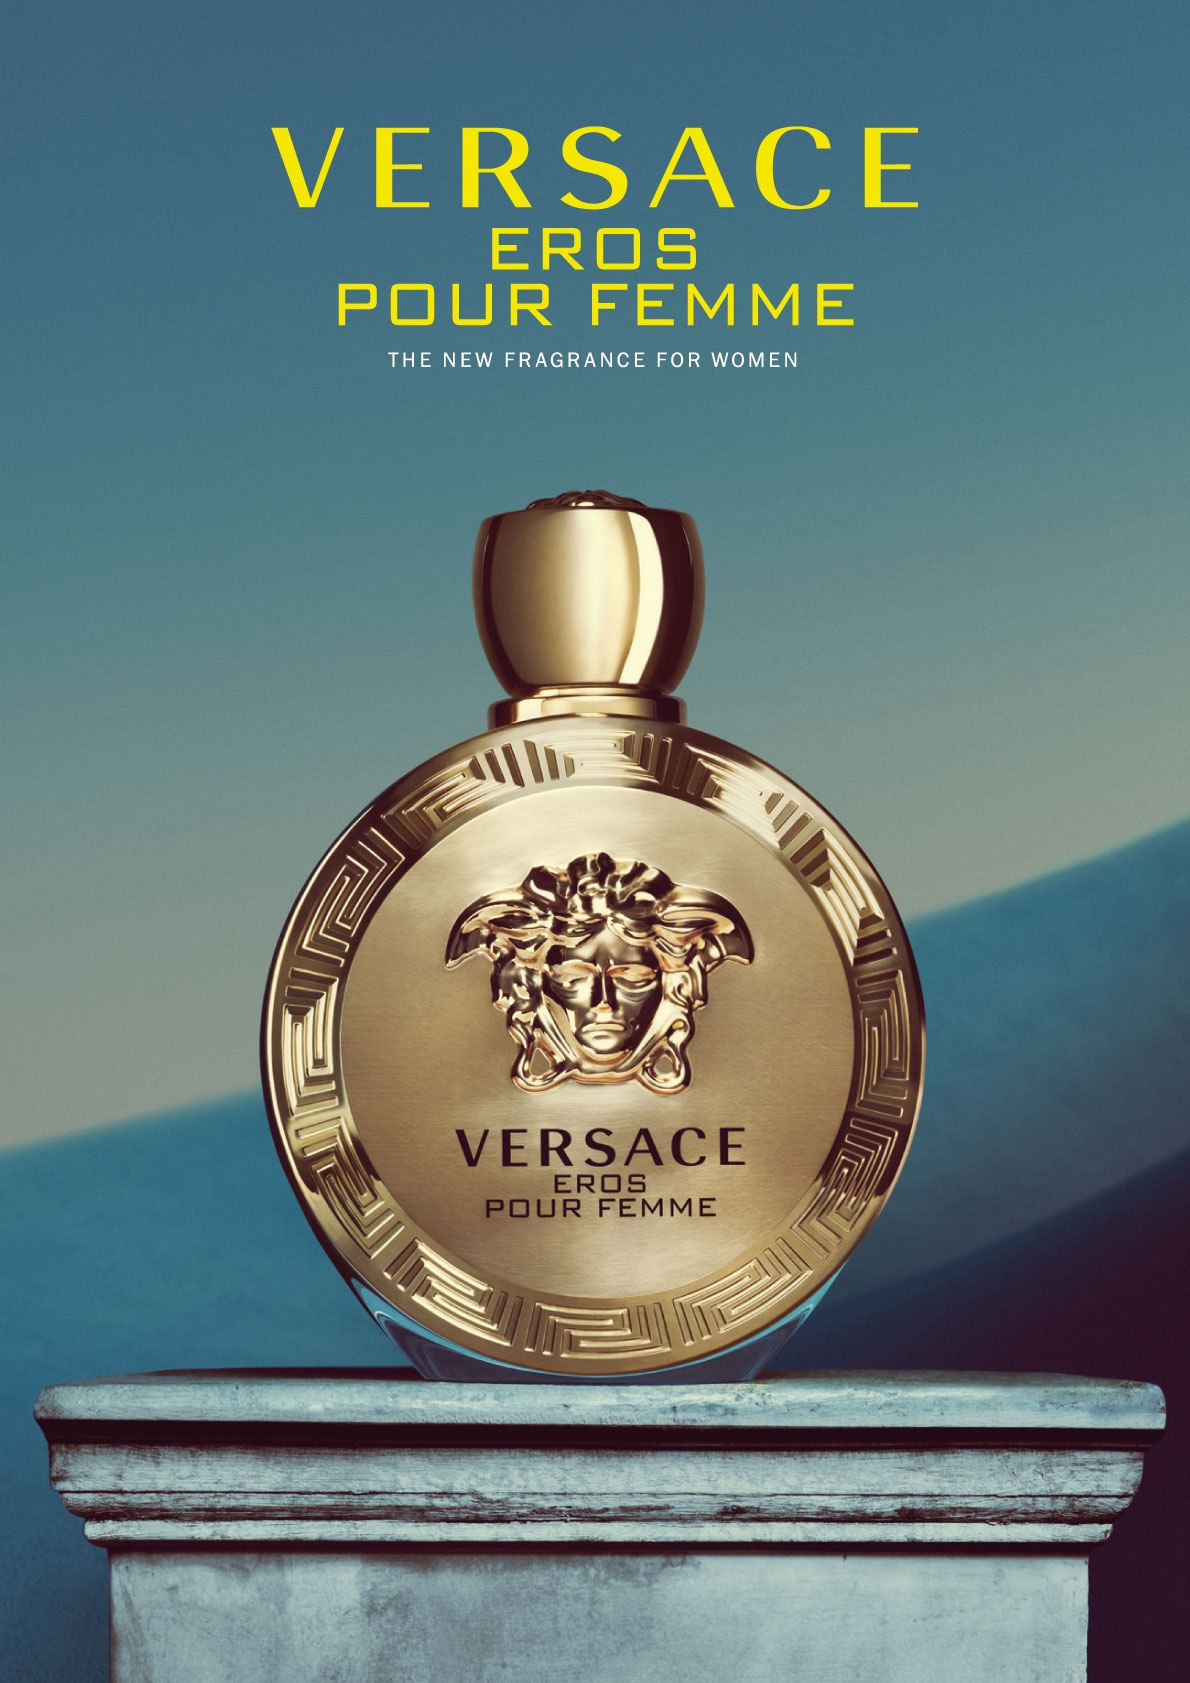 Versace Eros Pour Femme - Perfumes, Colognes, Parfums, Scents resource